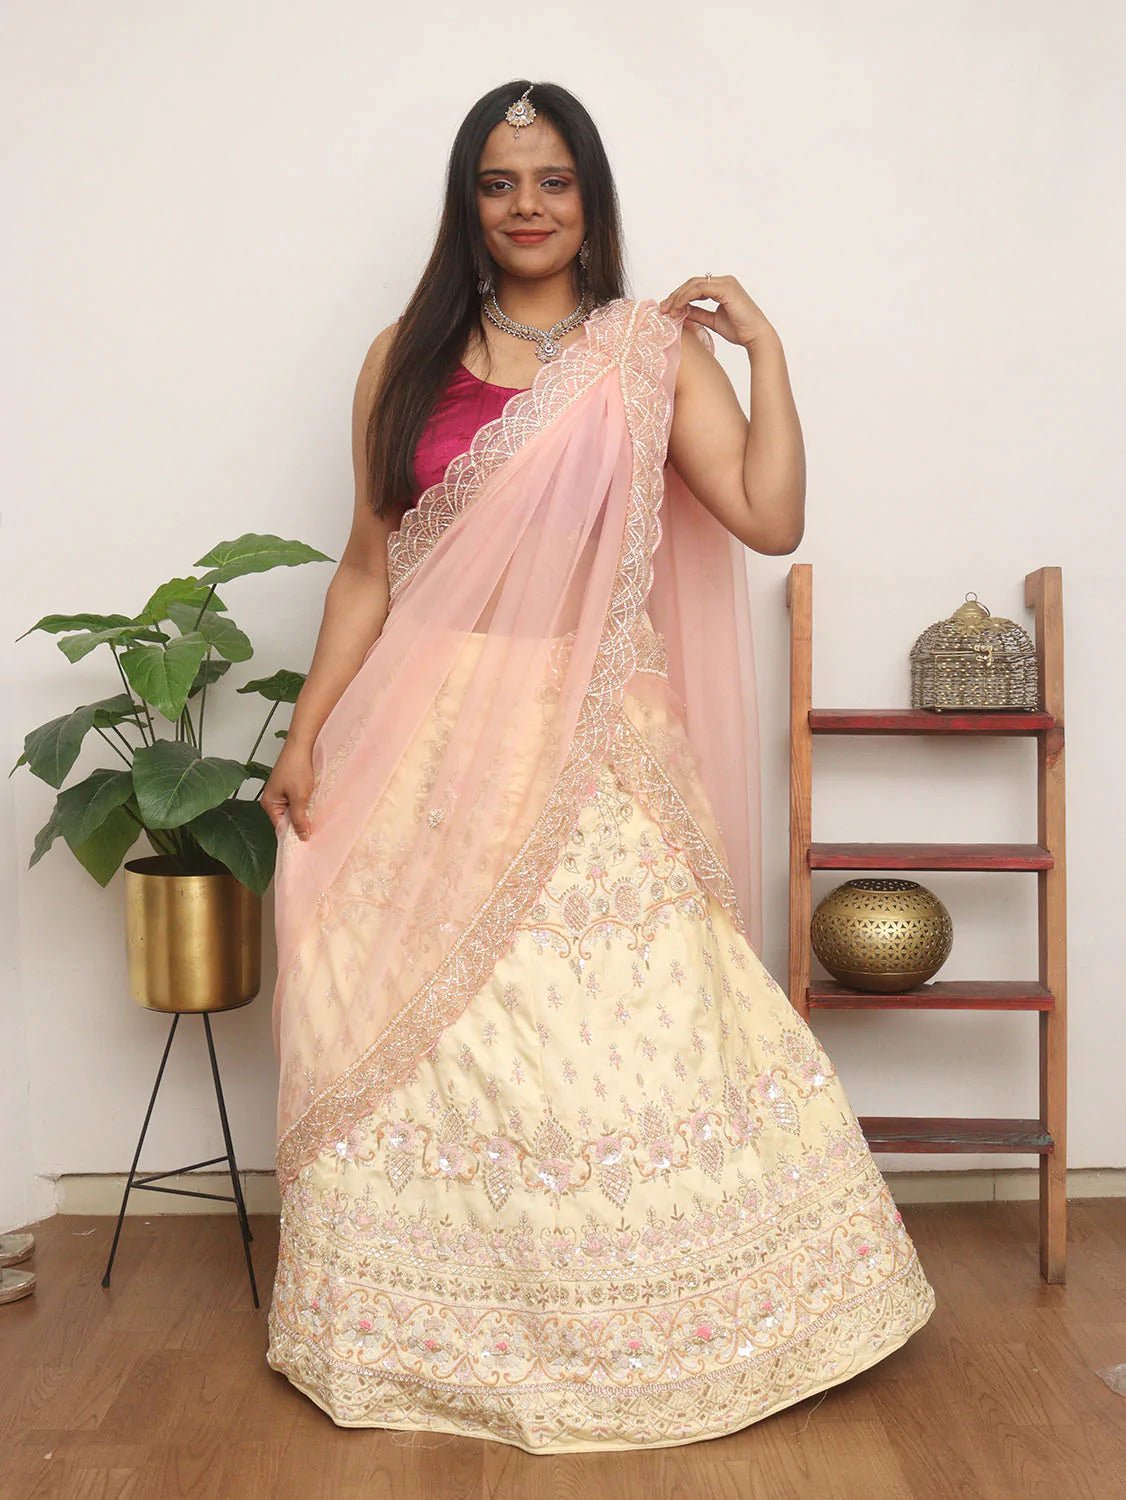 Women's Velvet Semi Stitched Lehenga Choli Grey Free Size Indian Wao | eBay